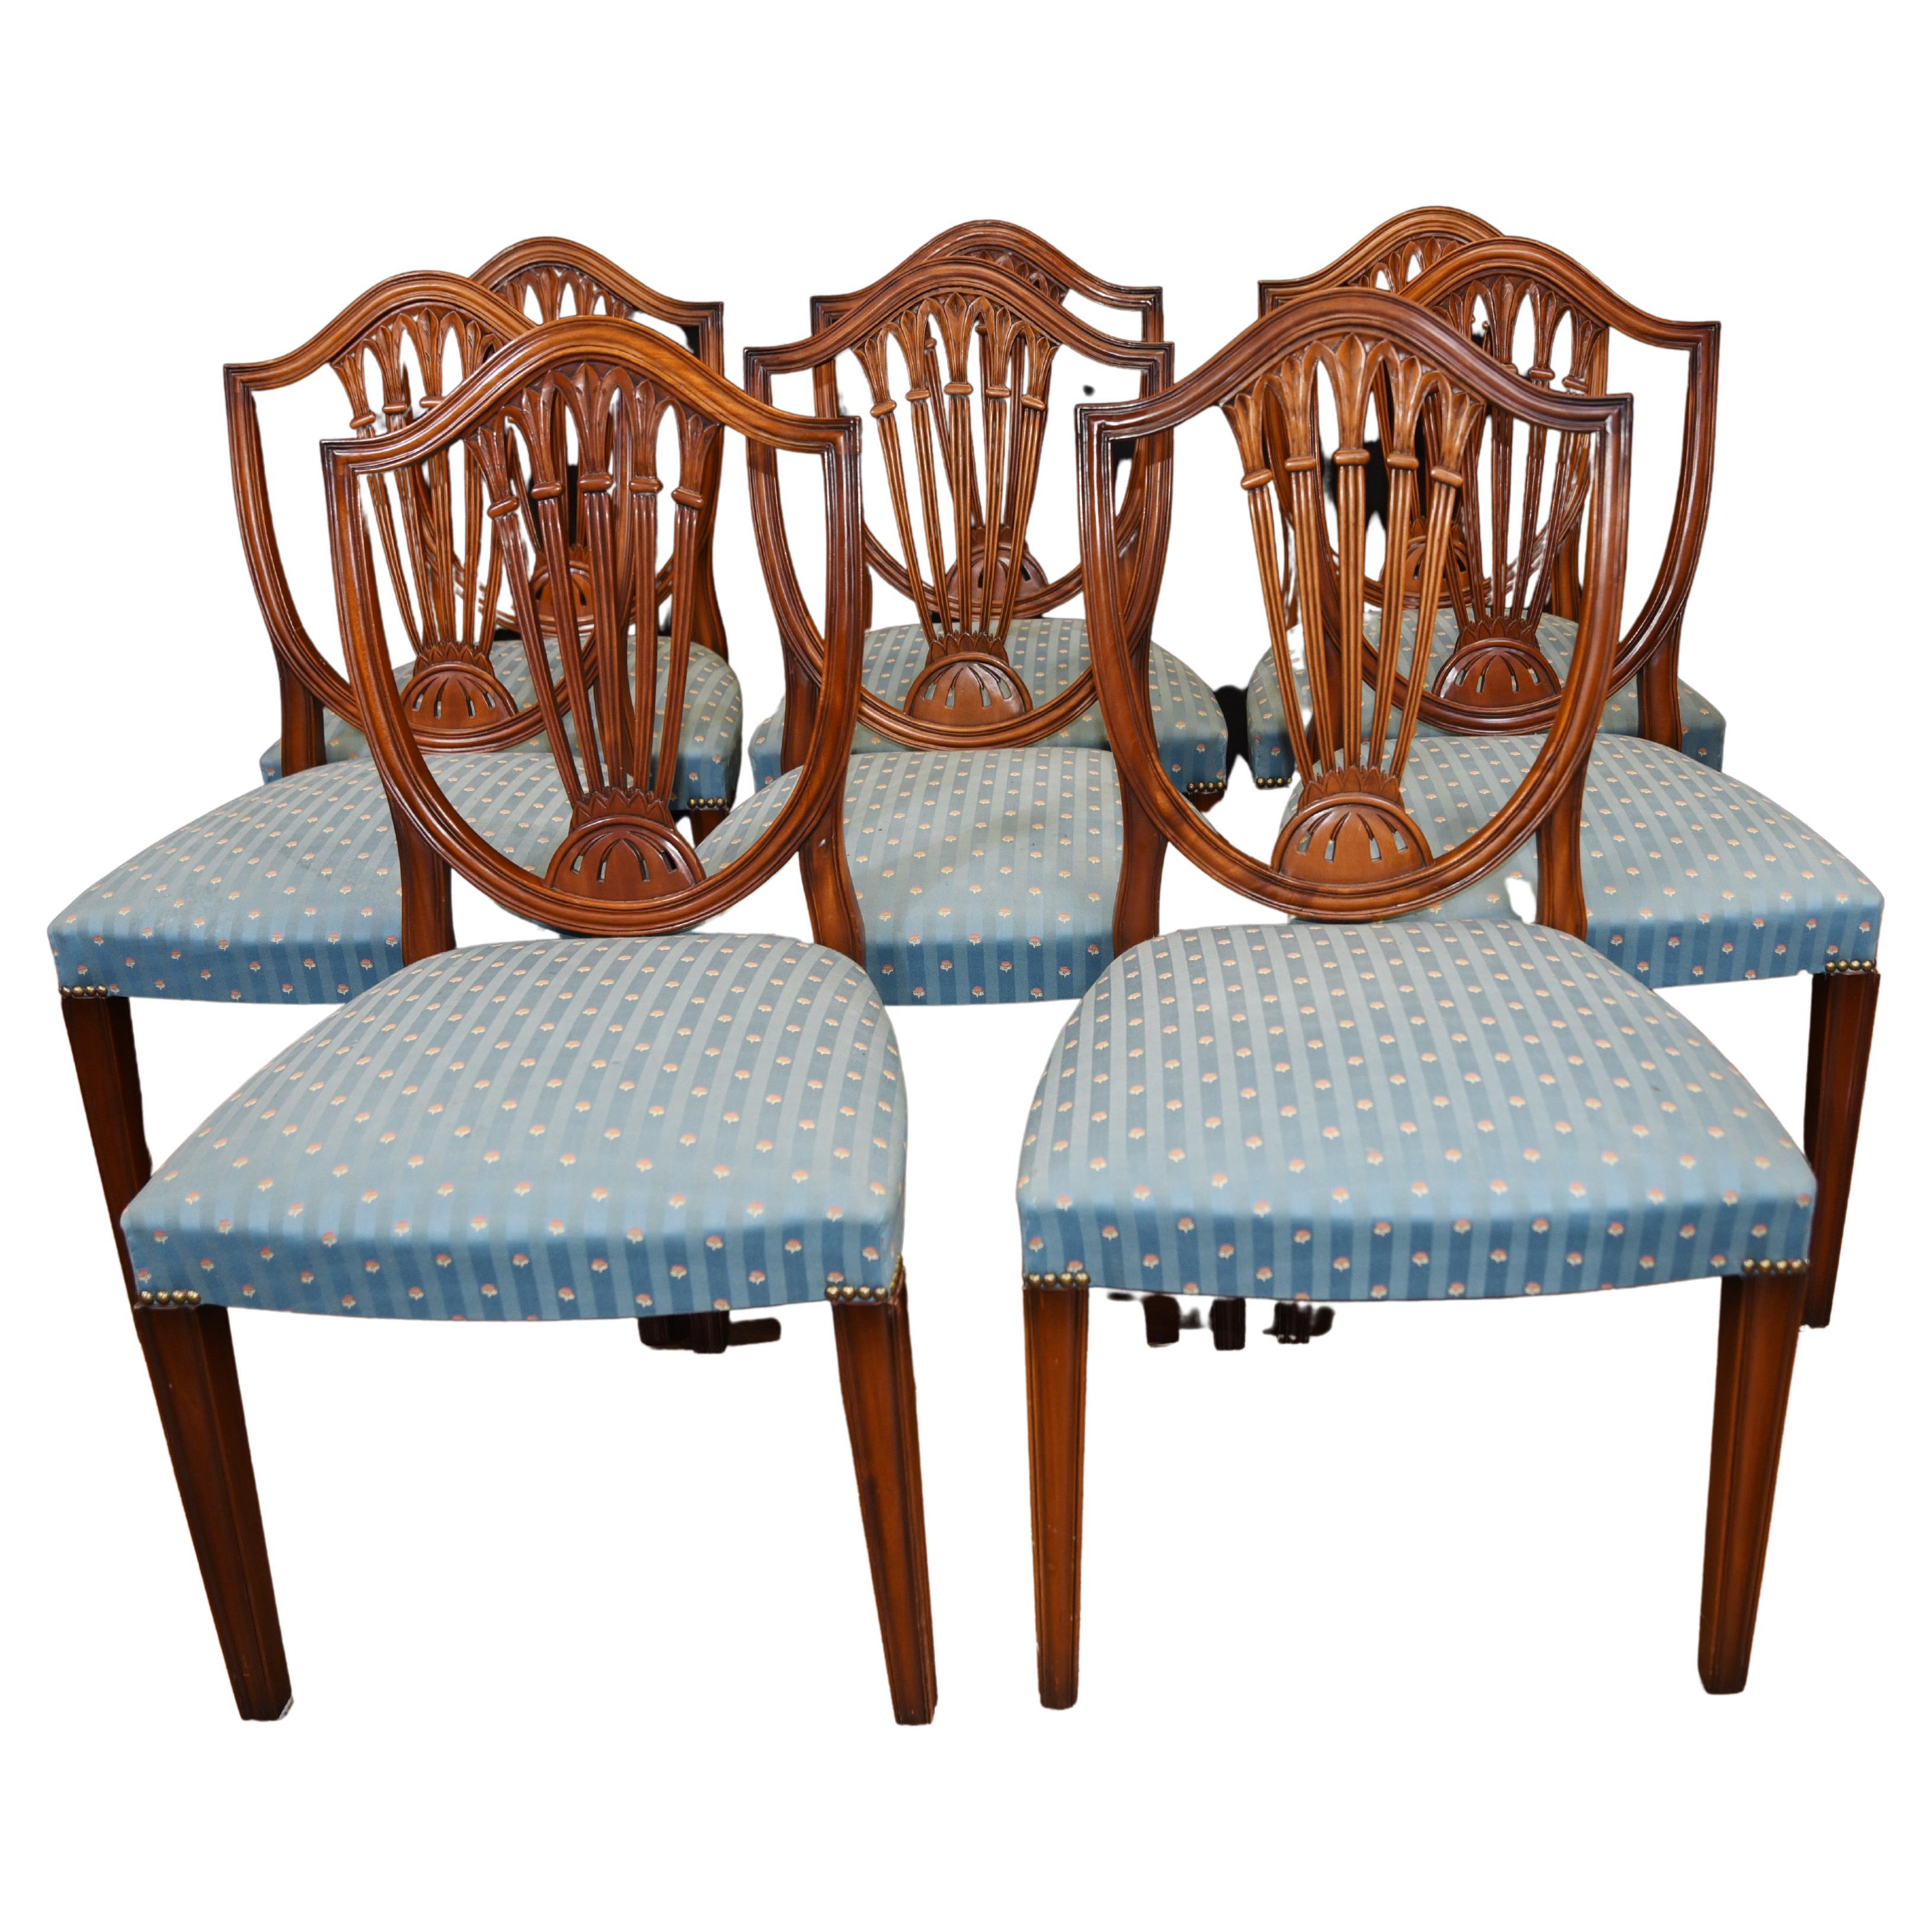 Set 8 Hepplewhite Dining Chairs Mahogany